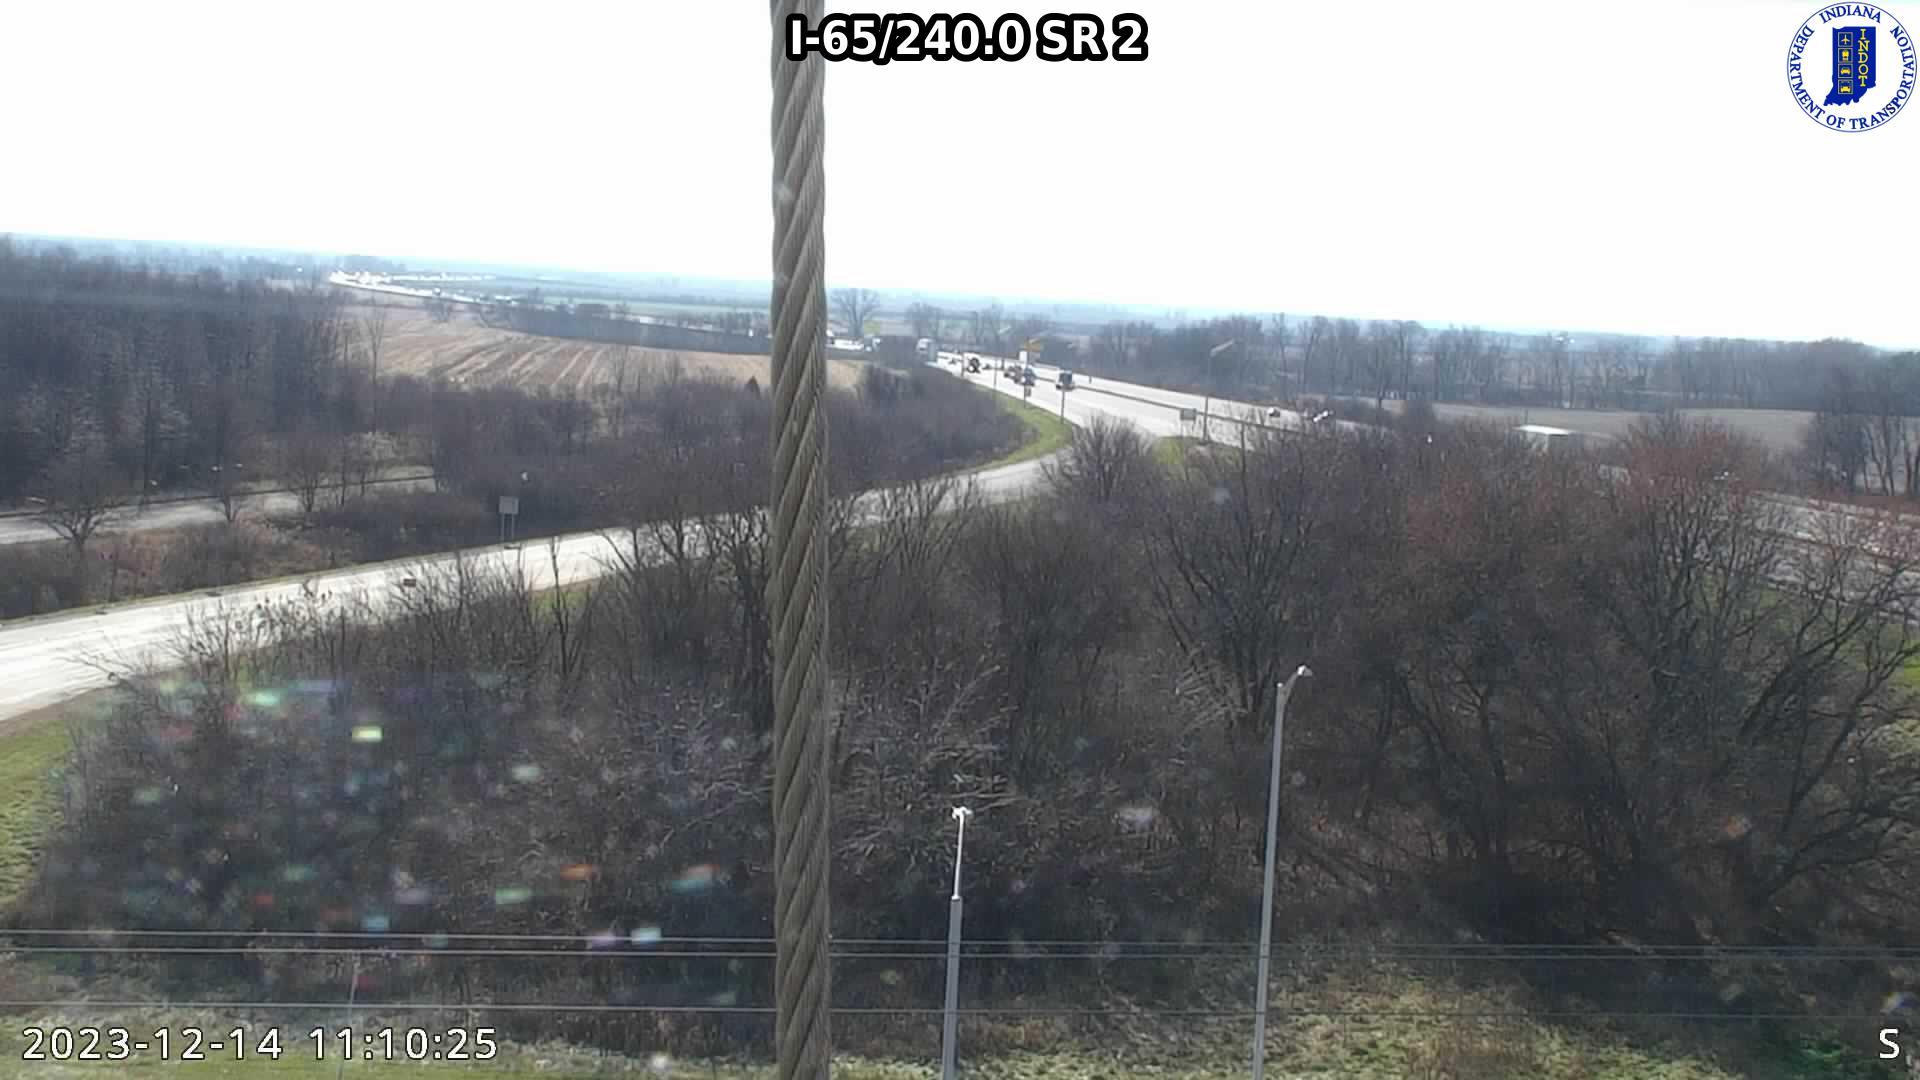 Dinwiddie: I-65: I-65/240.0 SR Traffic Camera